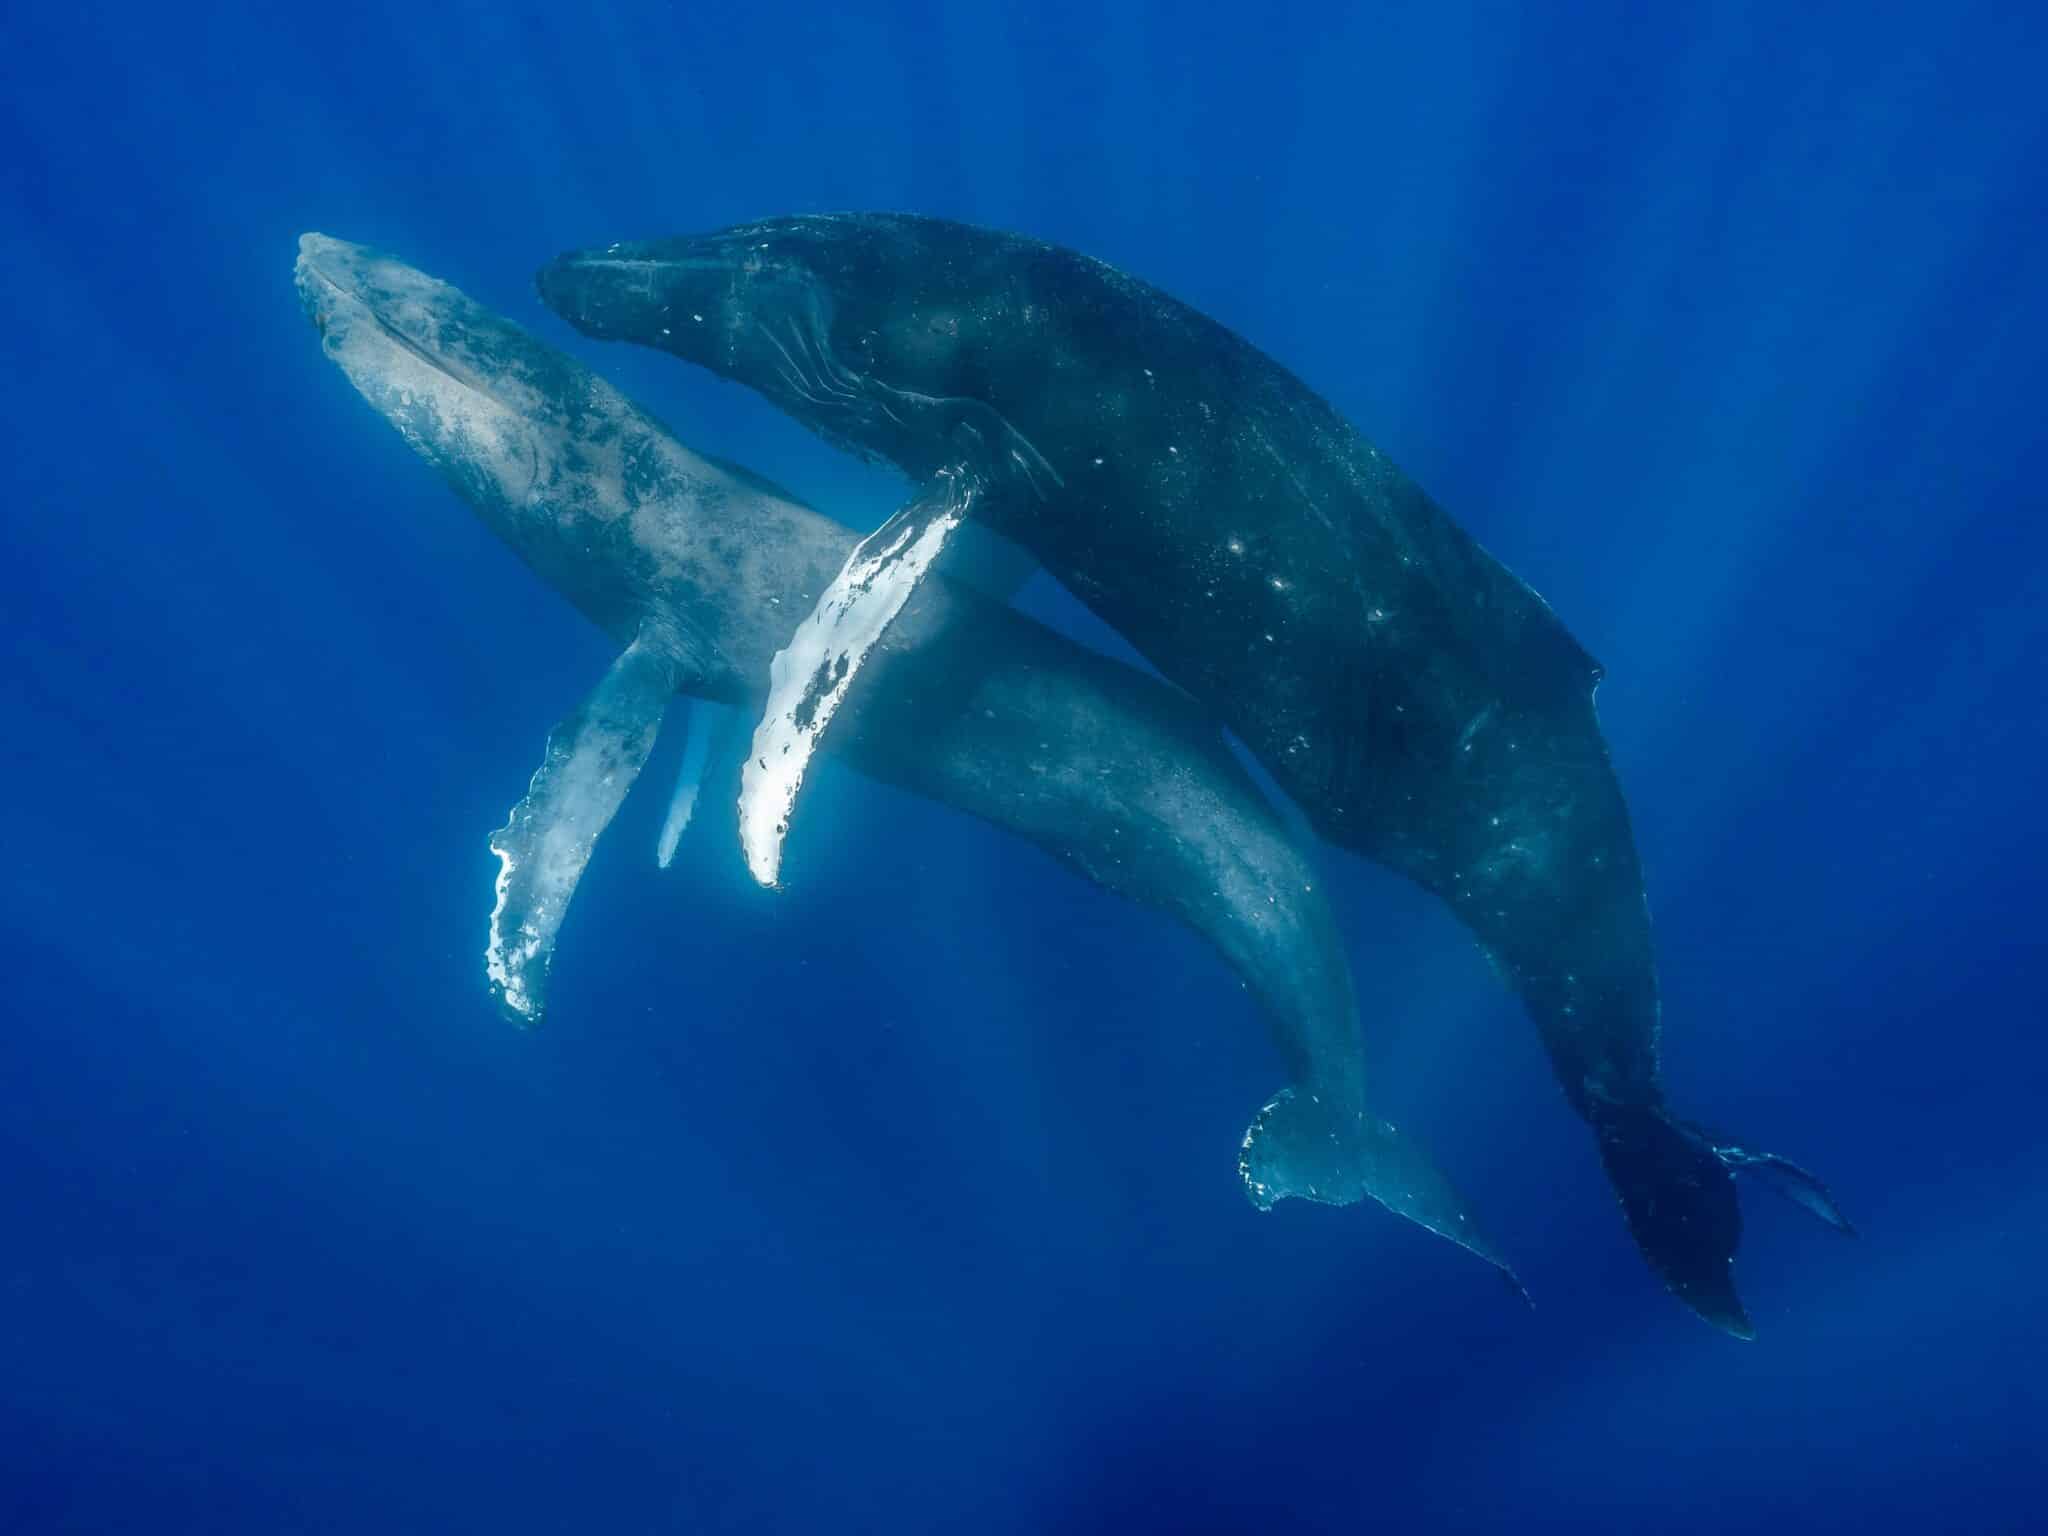 Captan por primera vez a dos ballenas jorobadas copulando y demostraron comportamientos homosexuales